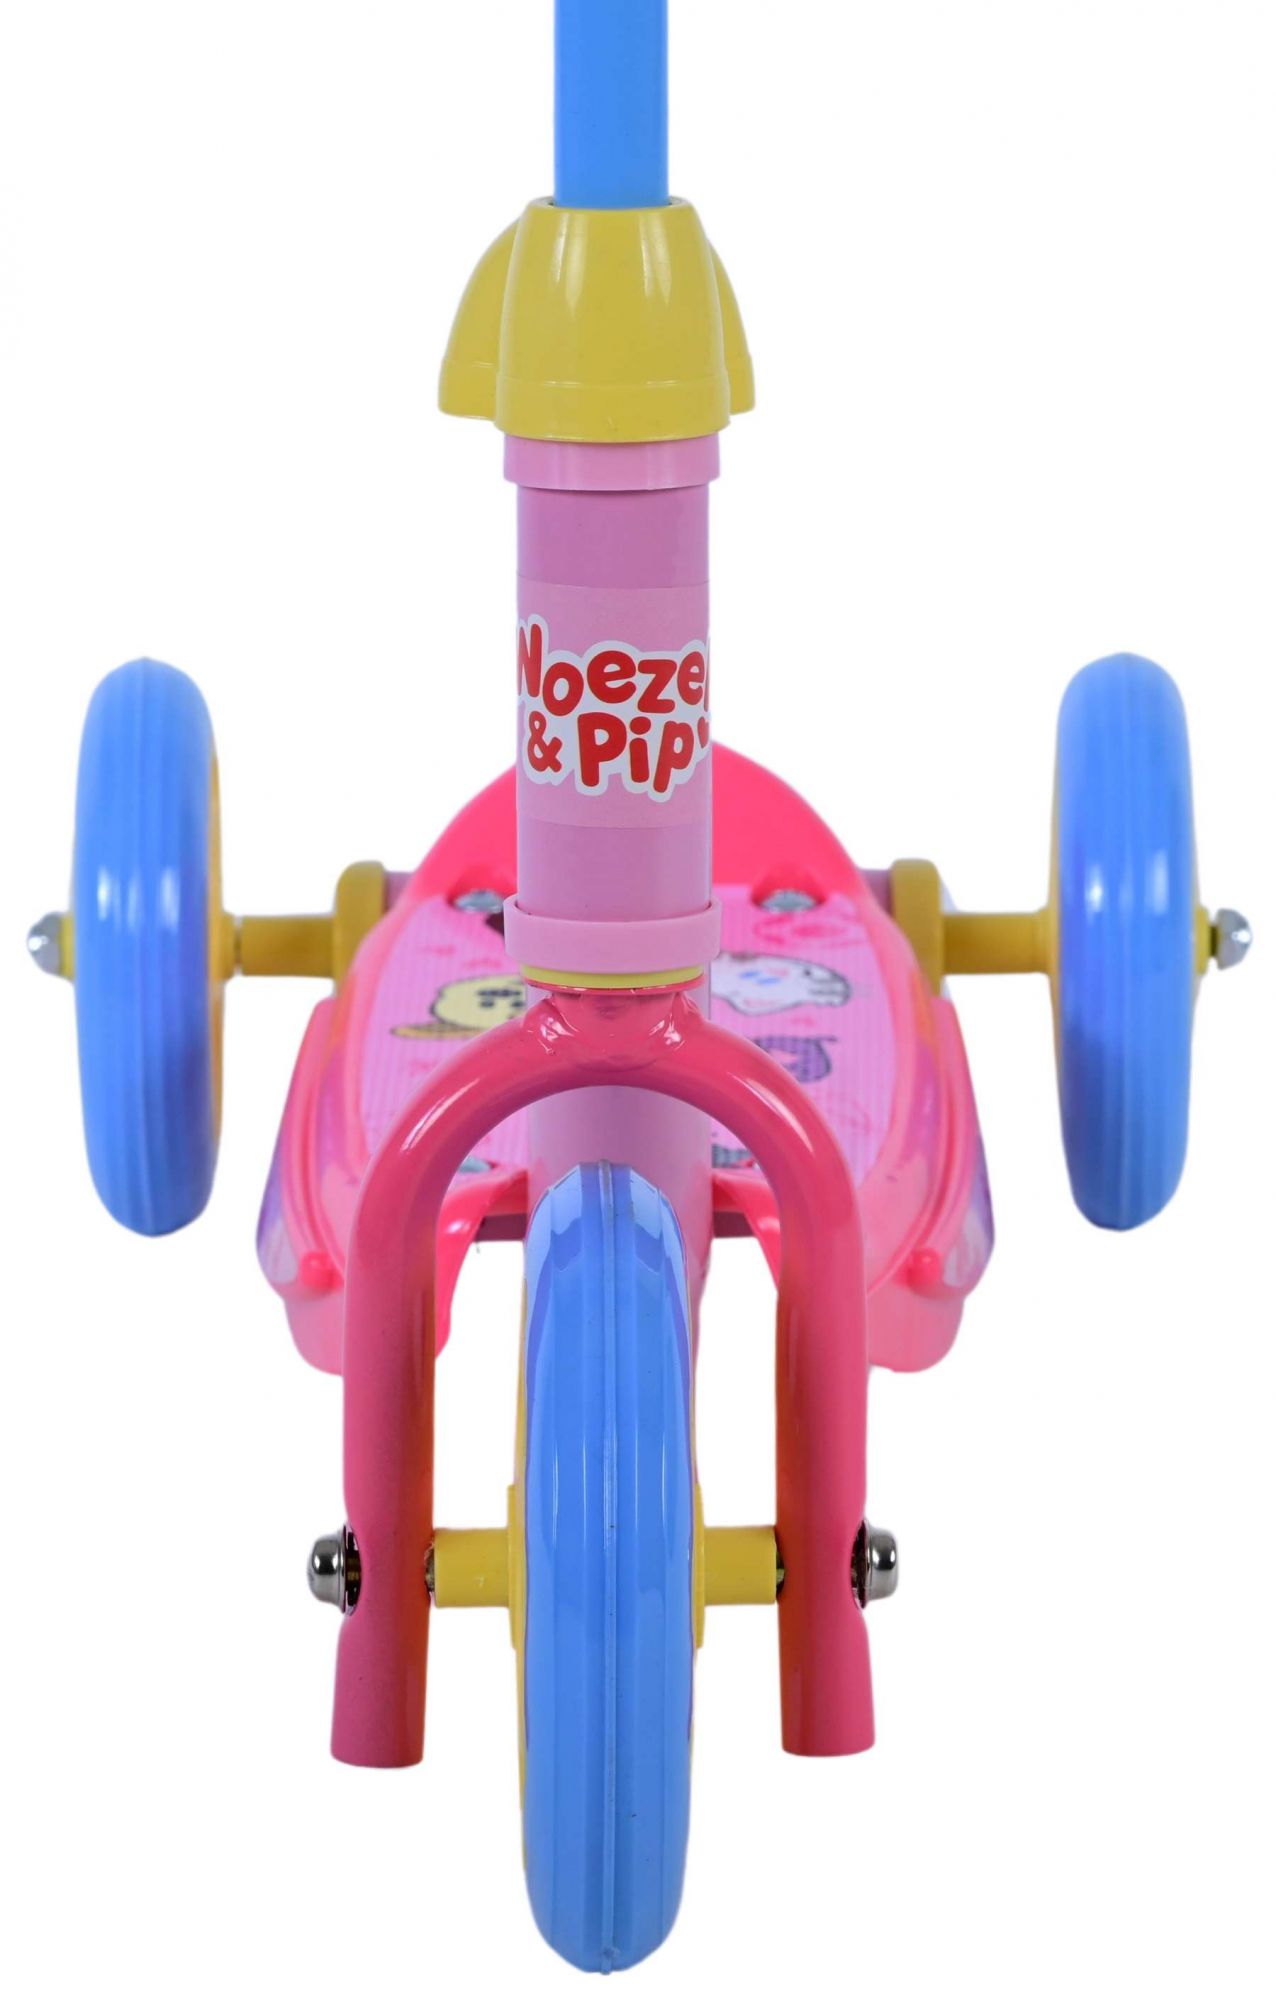 Woezel & Pip Scooter für Mädchen Kinderrad in Rosa Blau Gelb